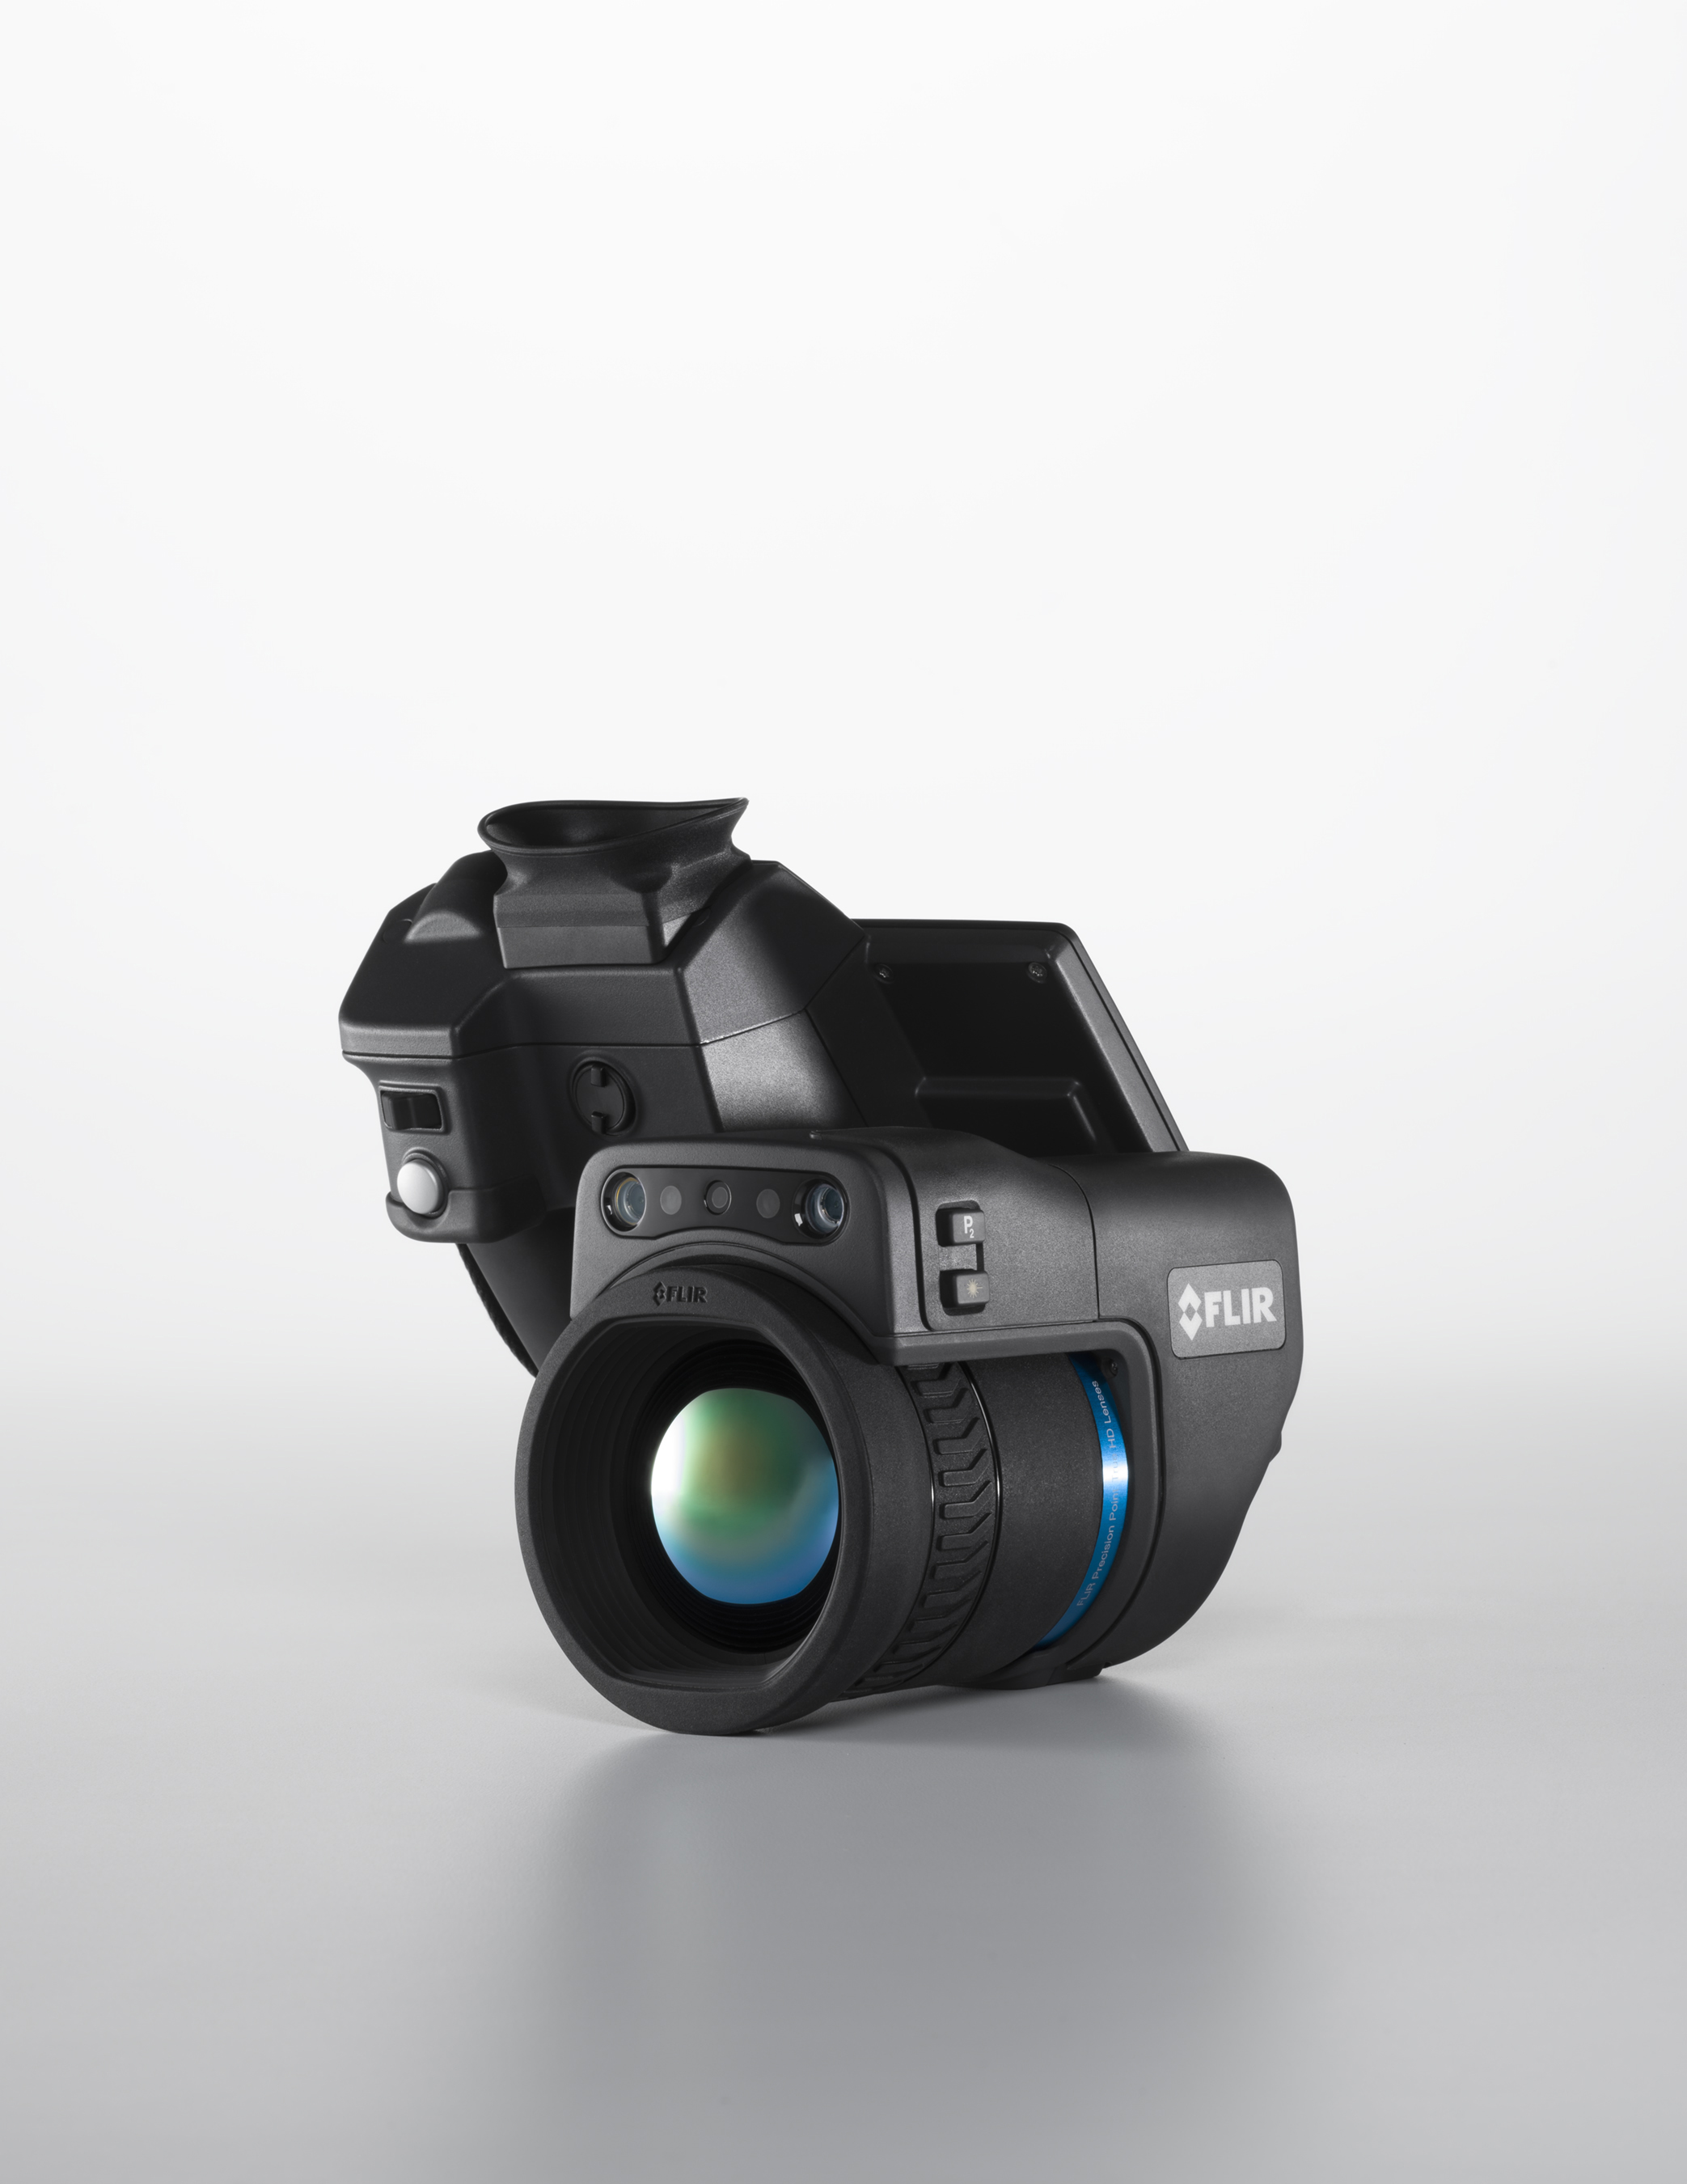 Caméra thermique infrarouge HD 1 024 × 768 avec viseur : T1020